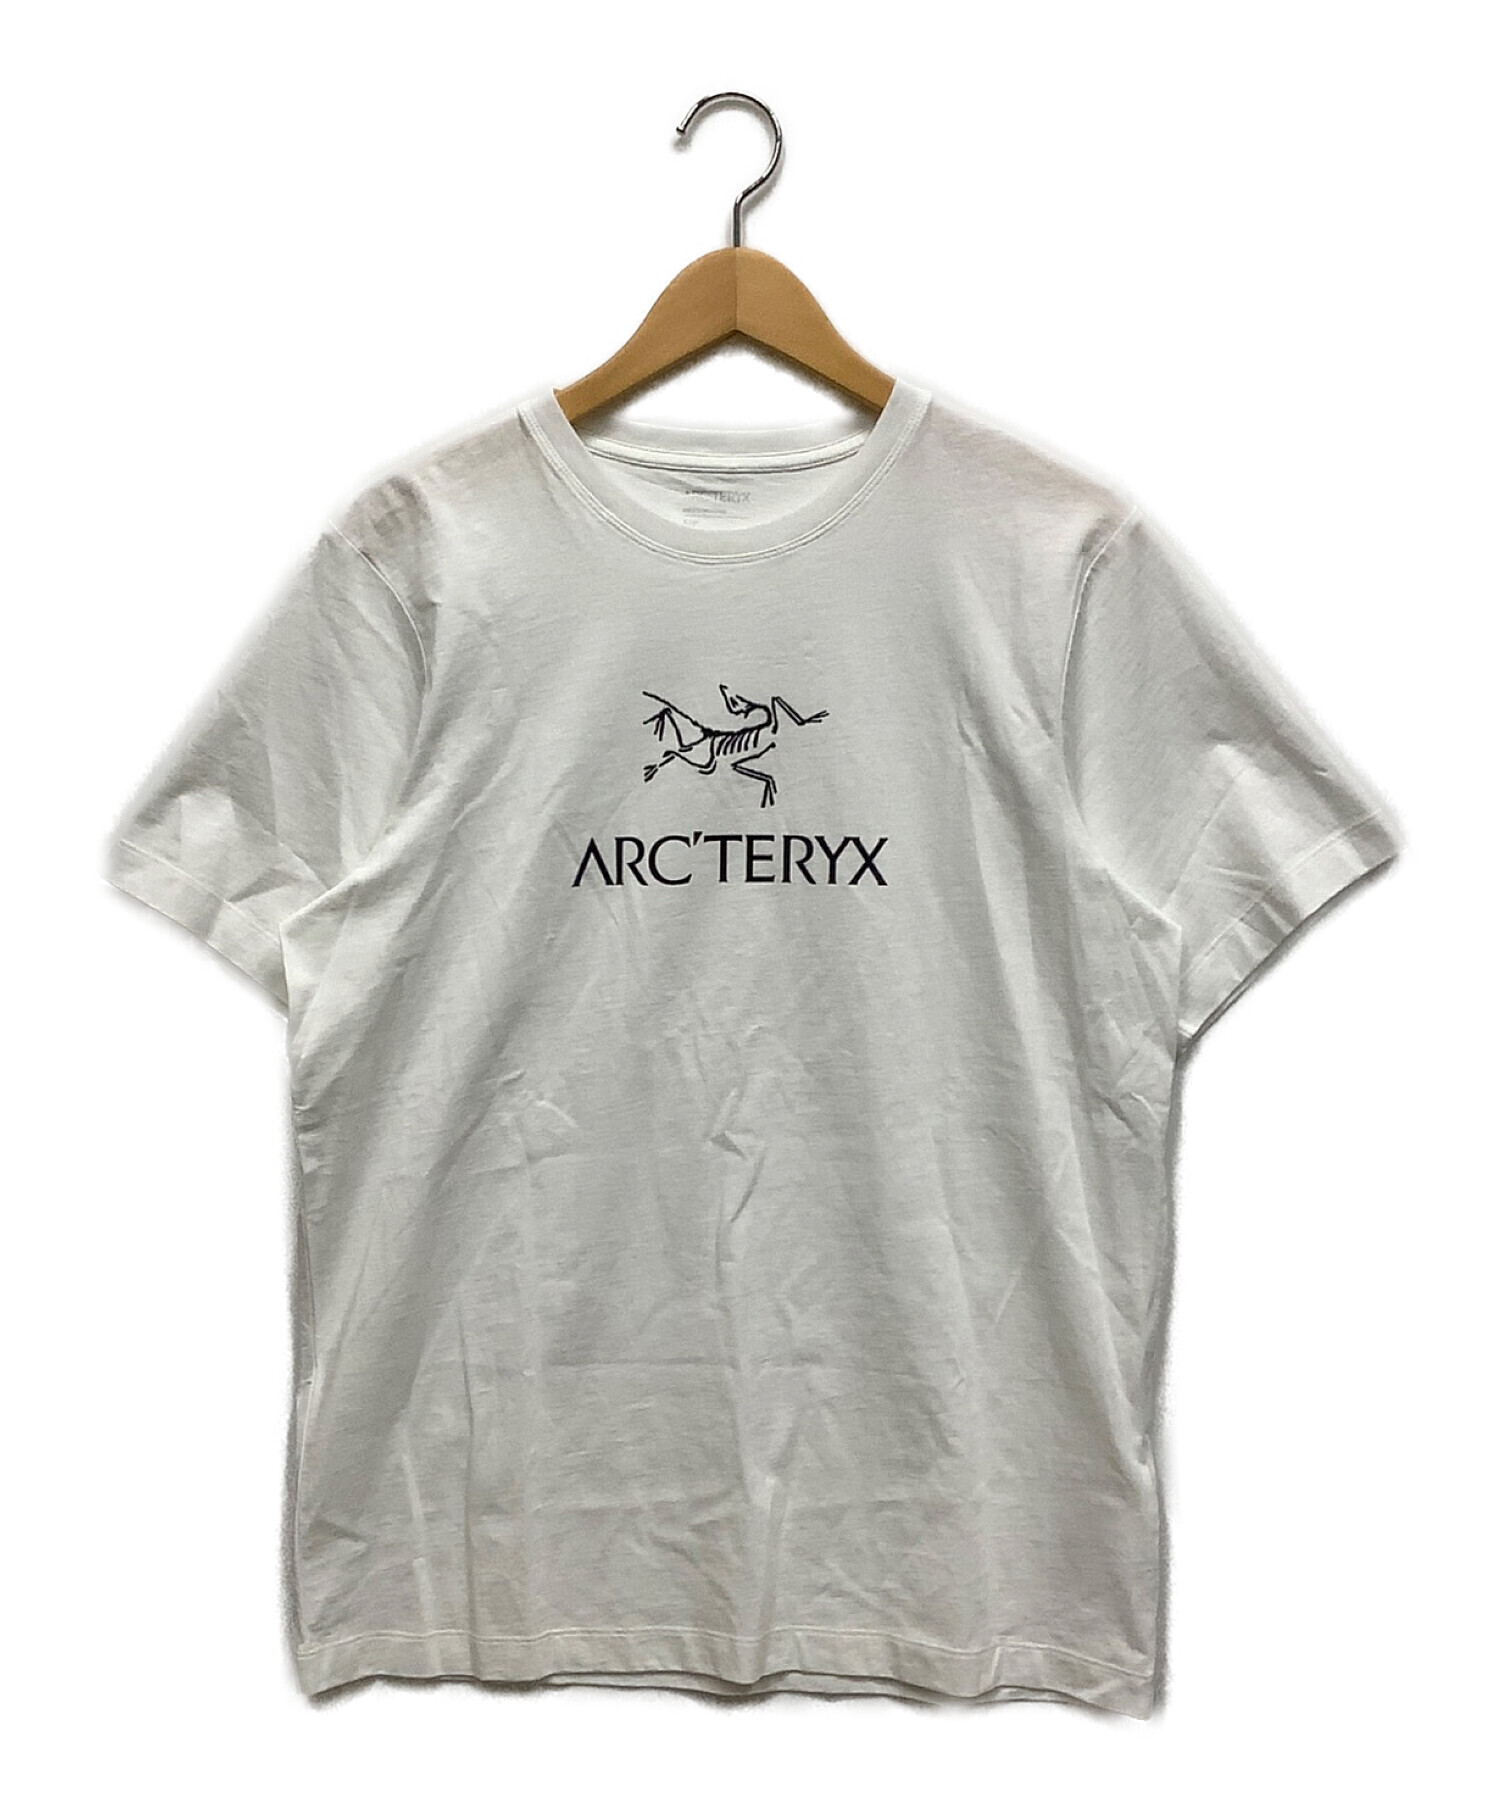 ARC'TERYX (アークテリクス) Tシャツ ホワイト サイズ:S/P